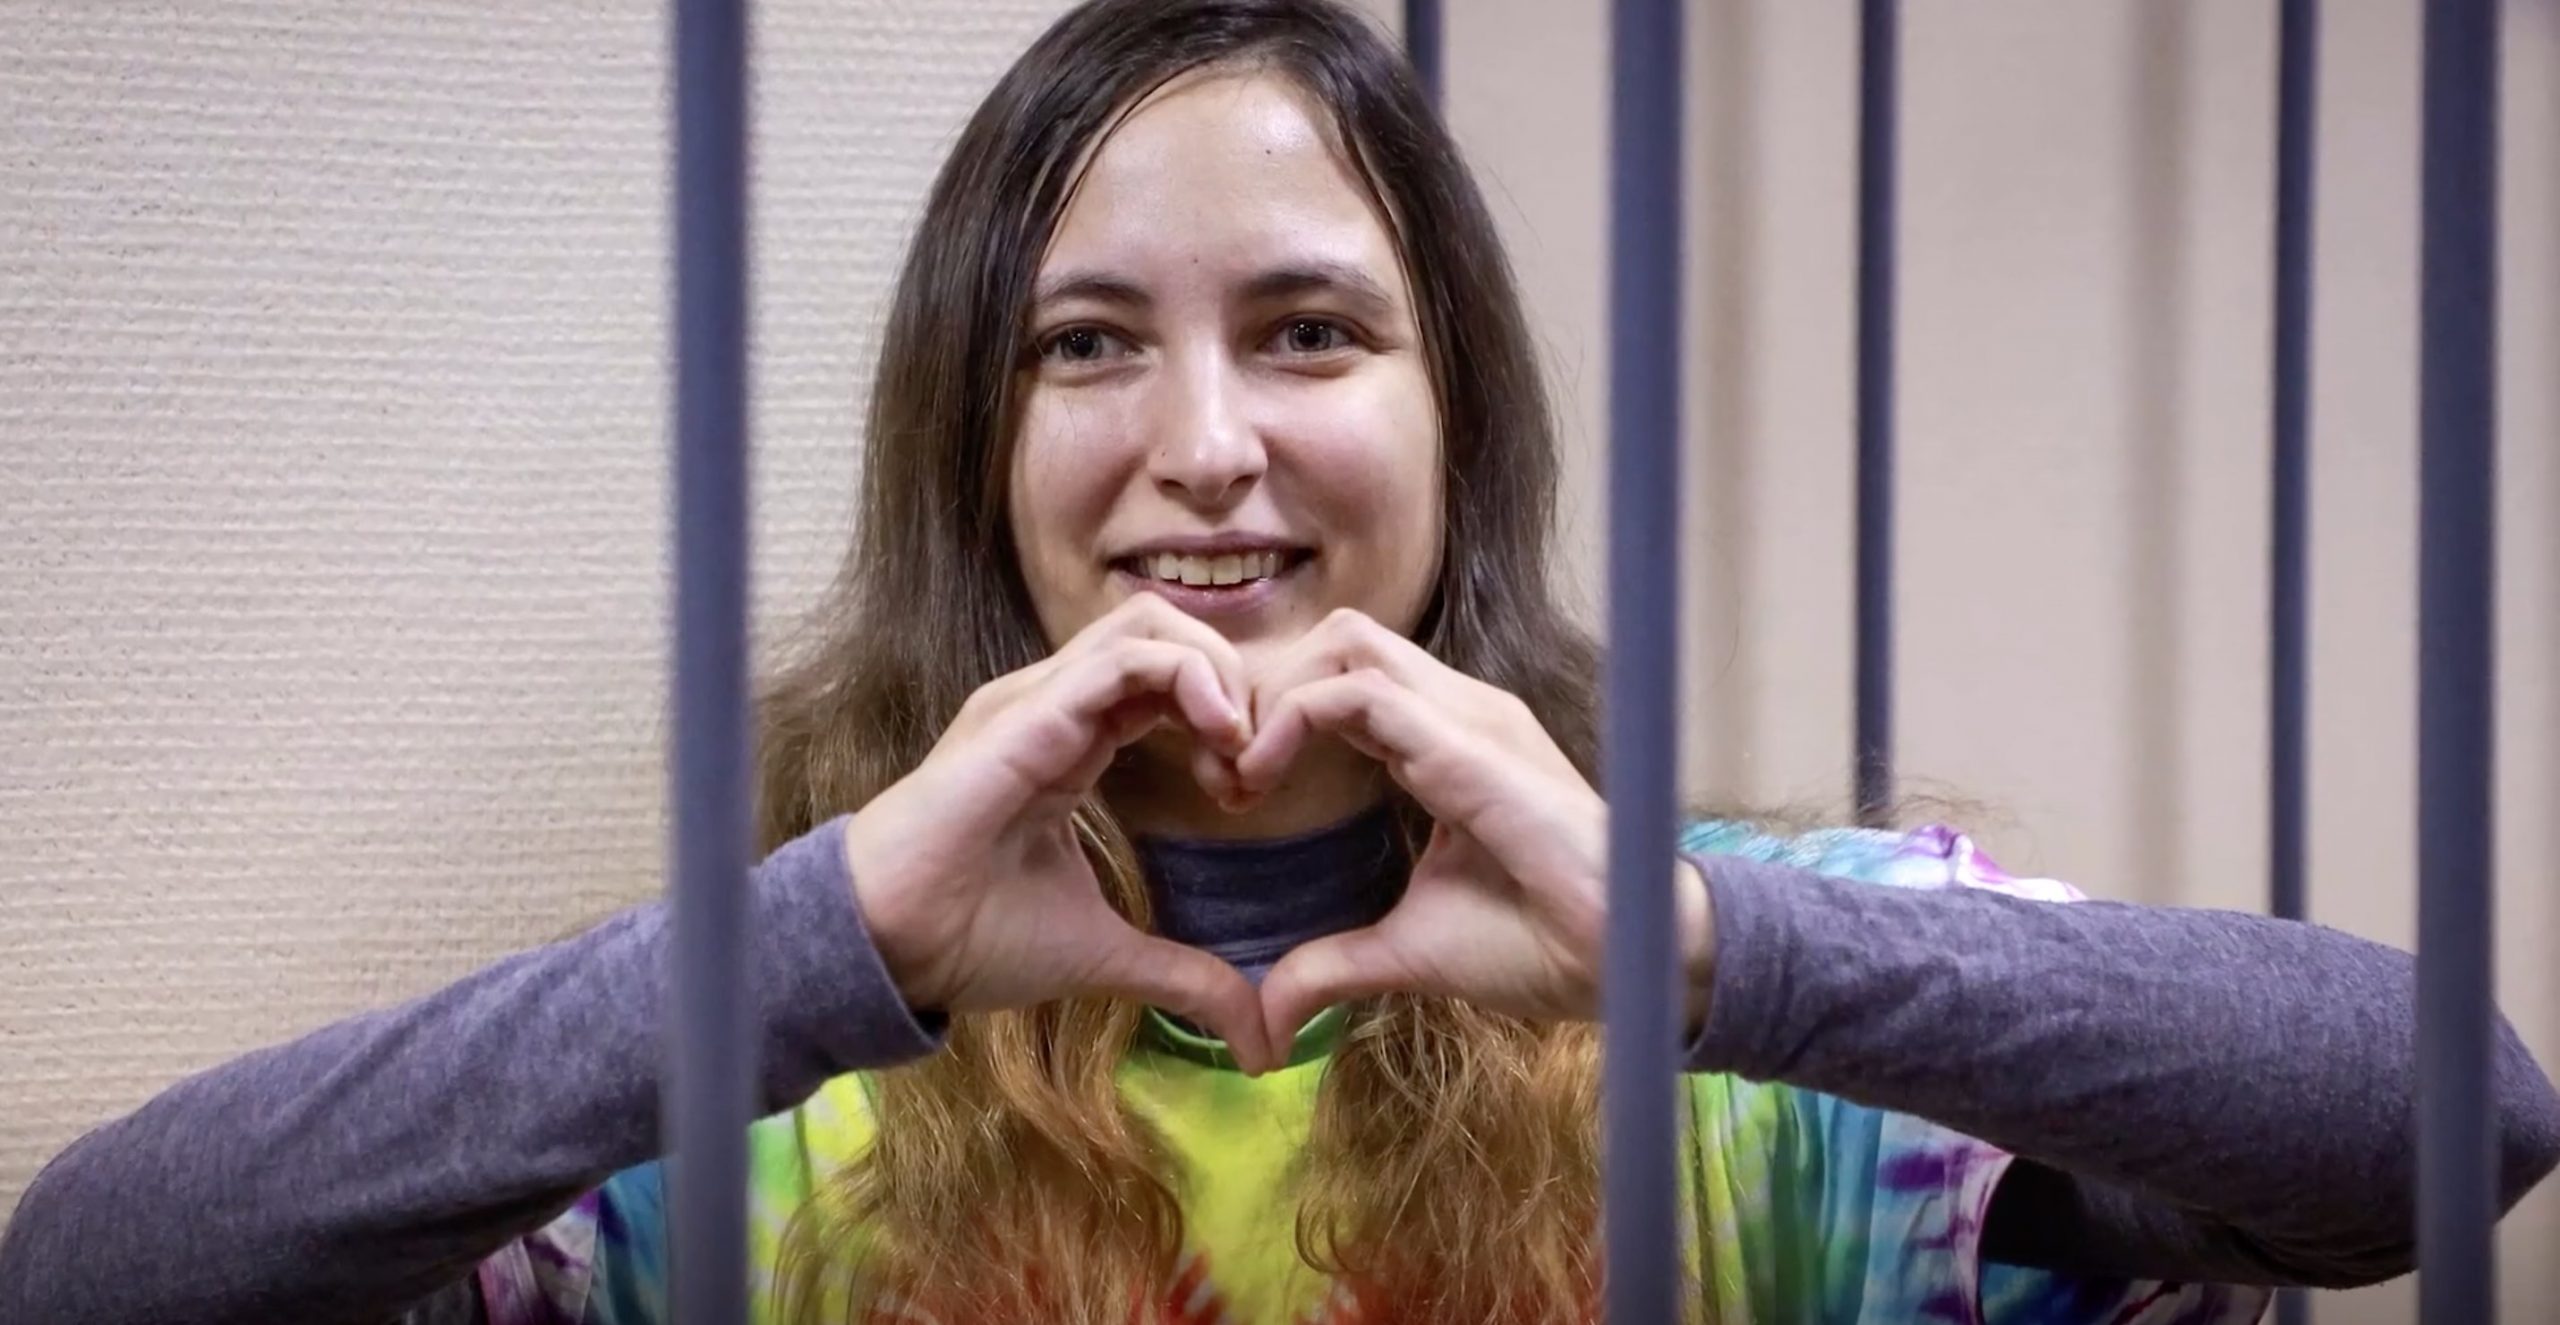 L'attivista russa Saša Skočilenko unisce le mani a forma di cuore dietro le sbarre nel processo che l'ha vista condannata a 7 anni di colonia penale.